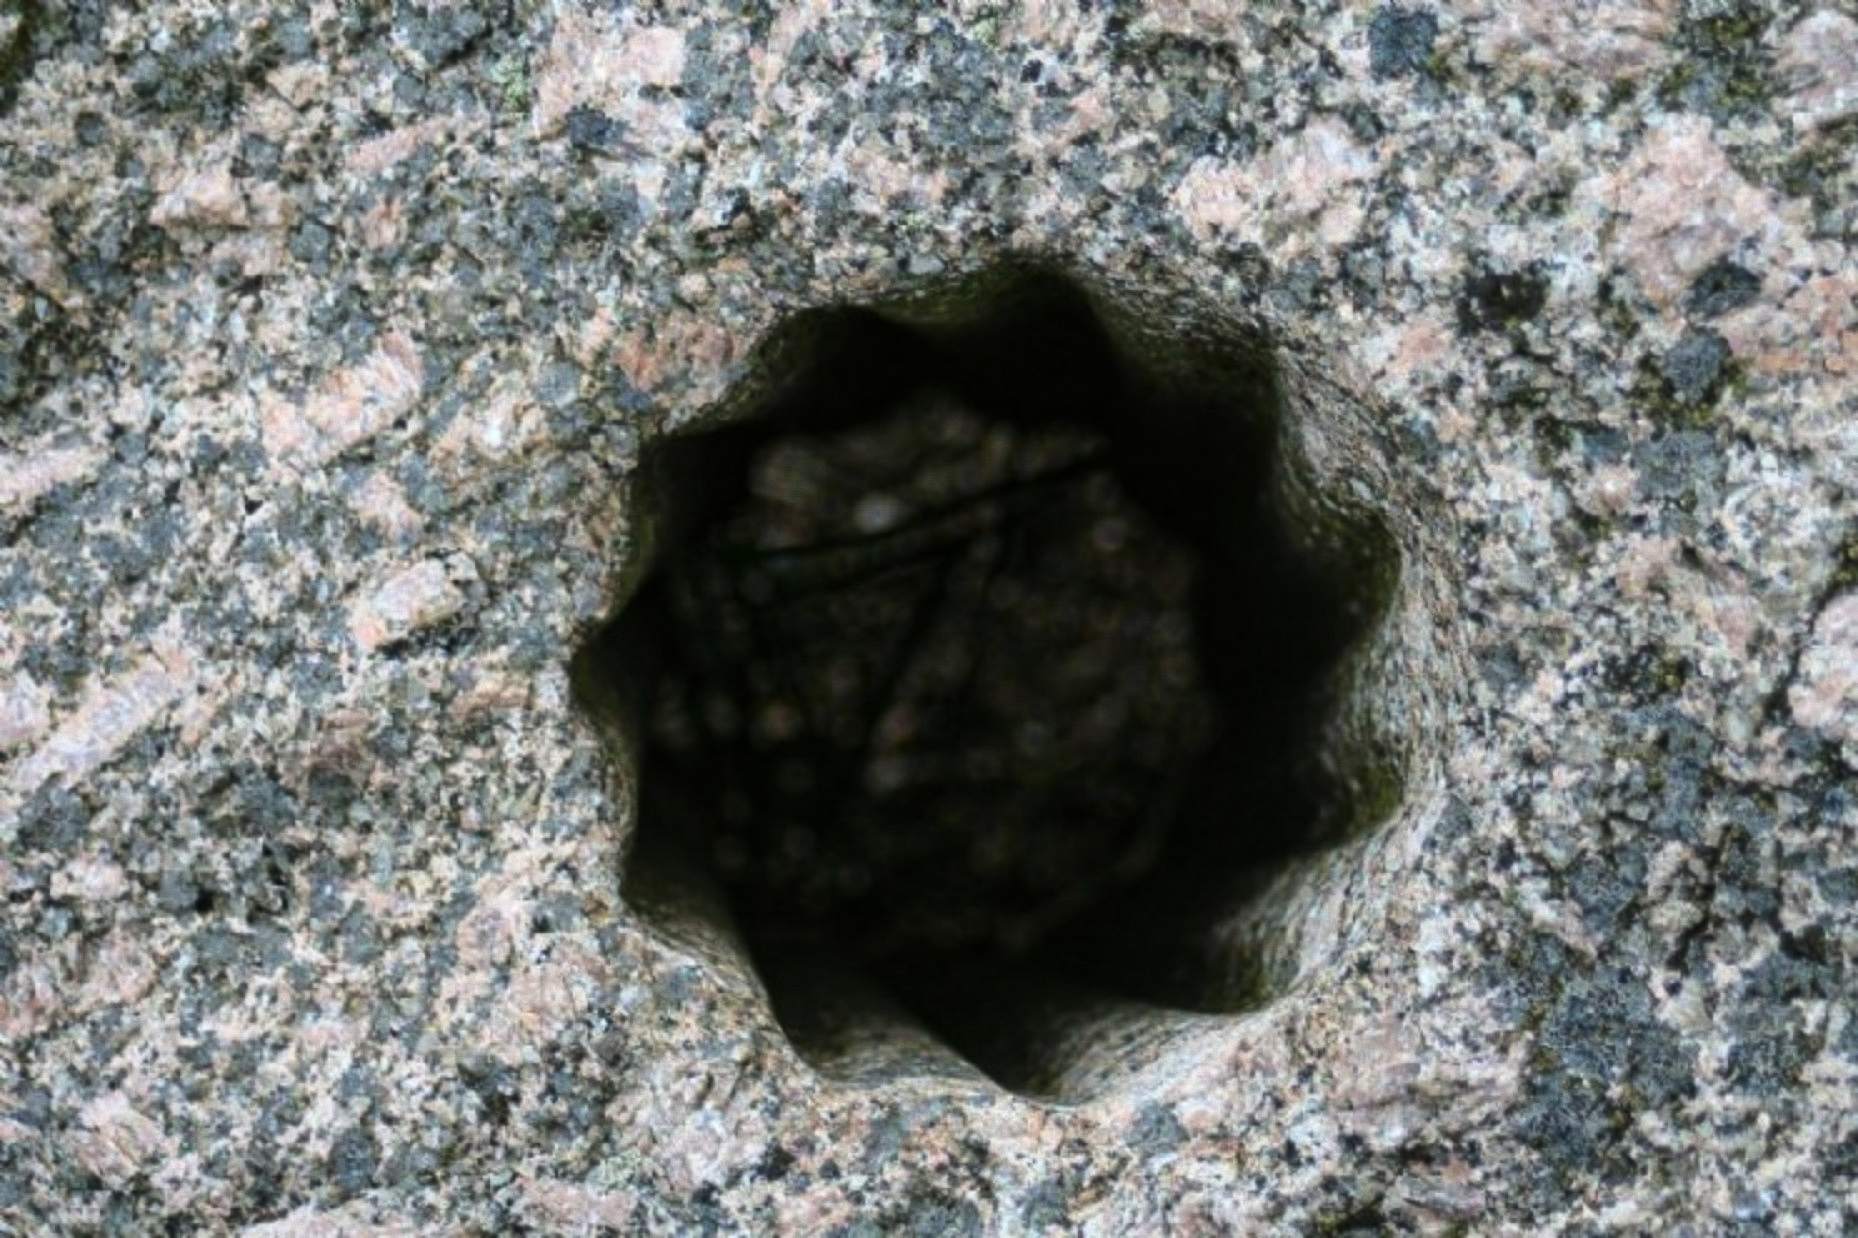 이 이상하고 고대의 별 모양의 구멍은 노르웨이 볼다(Volda)에서 단단한 돌로 조각된 것으로 발견되었습니다. 이 도시는 한때 수많은 노르웨이 정착민의 고향이었고 오늘날 이 나라의 고고학자들에게 가장 중요한 유적지 중 하나로 등재되어 있습니다.